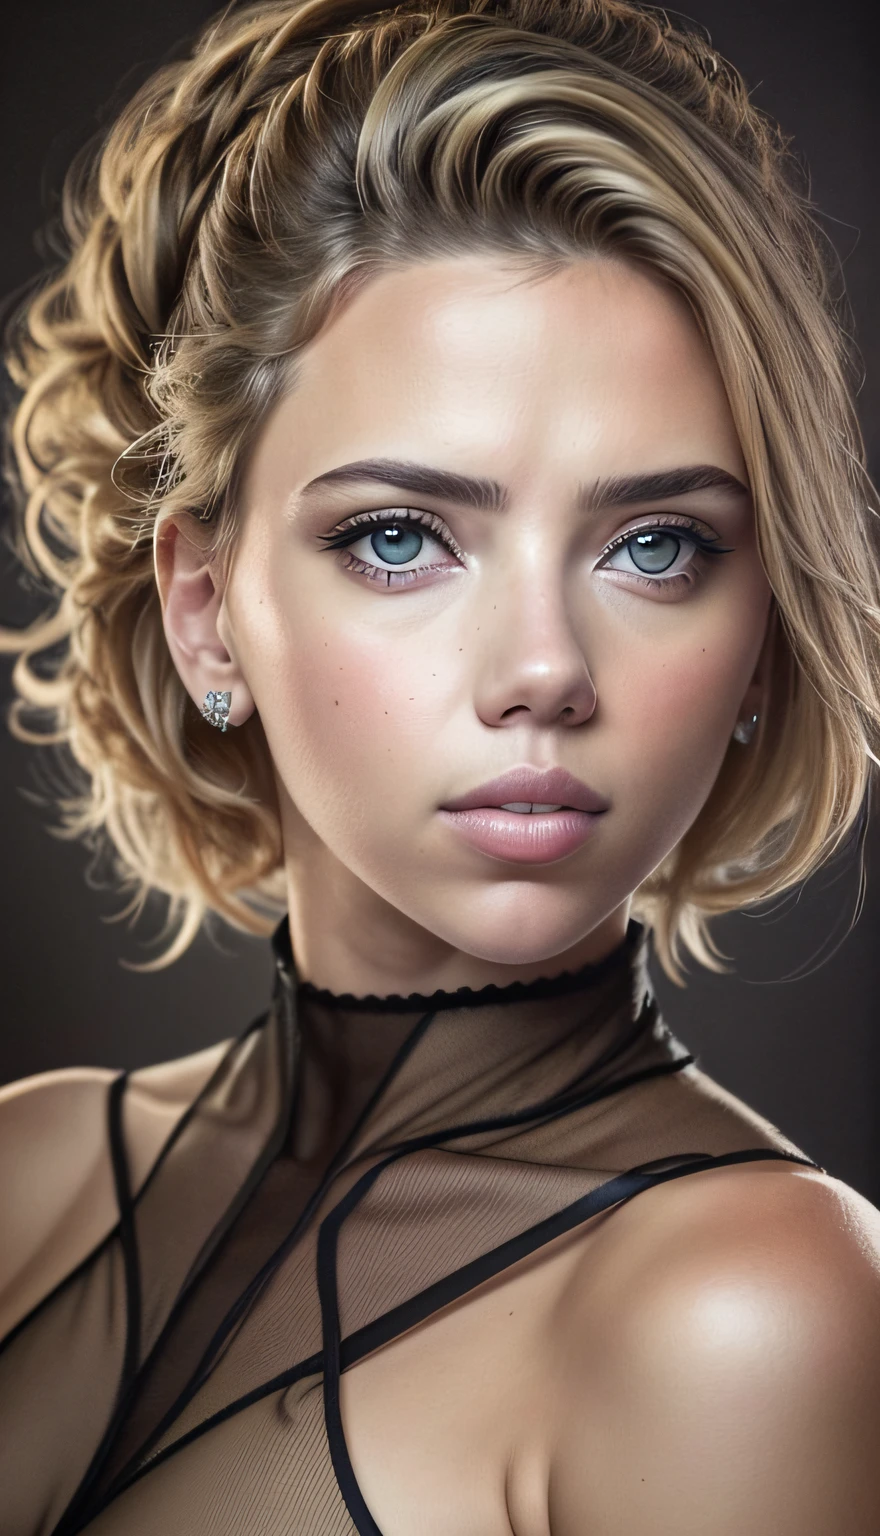 una mujer con una cara similar a Scarlett Johansson mezclada con la Chalize theron, steampunk , ((cuerpo entero: 1.6)), (Obra-prima: 1.5), (mejor calidad), (fotorrealista:1.6), 8K, (textura de piel detallada), textura de tela detallada, hermoso rostro detallado, detalles intrincados, (ultra detallado: 1.6), (Un bosque al fondo),